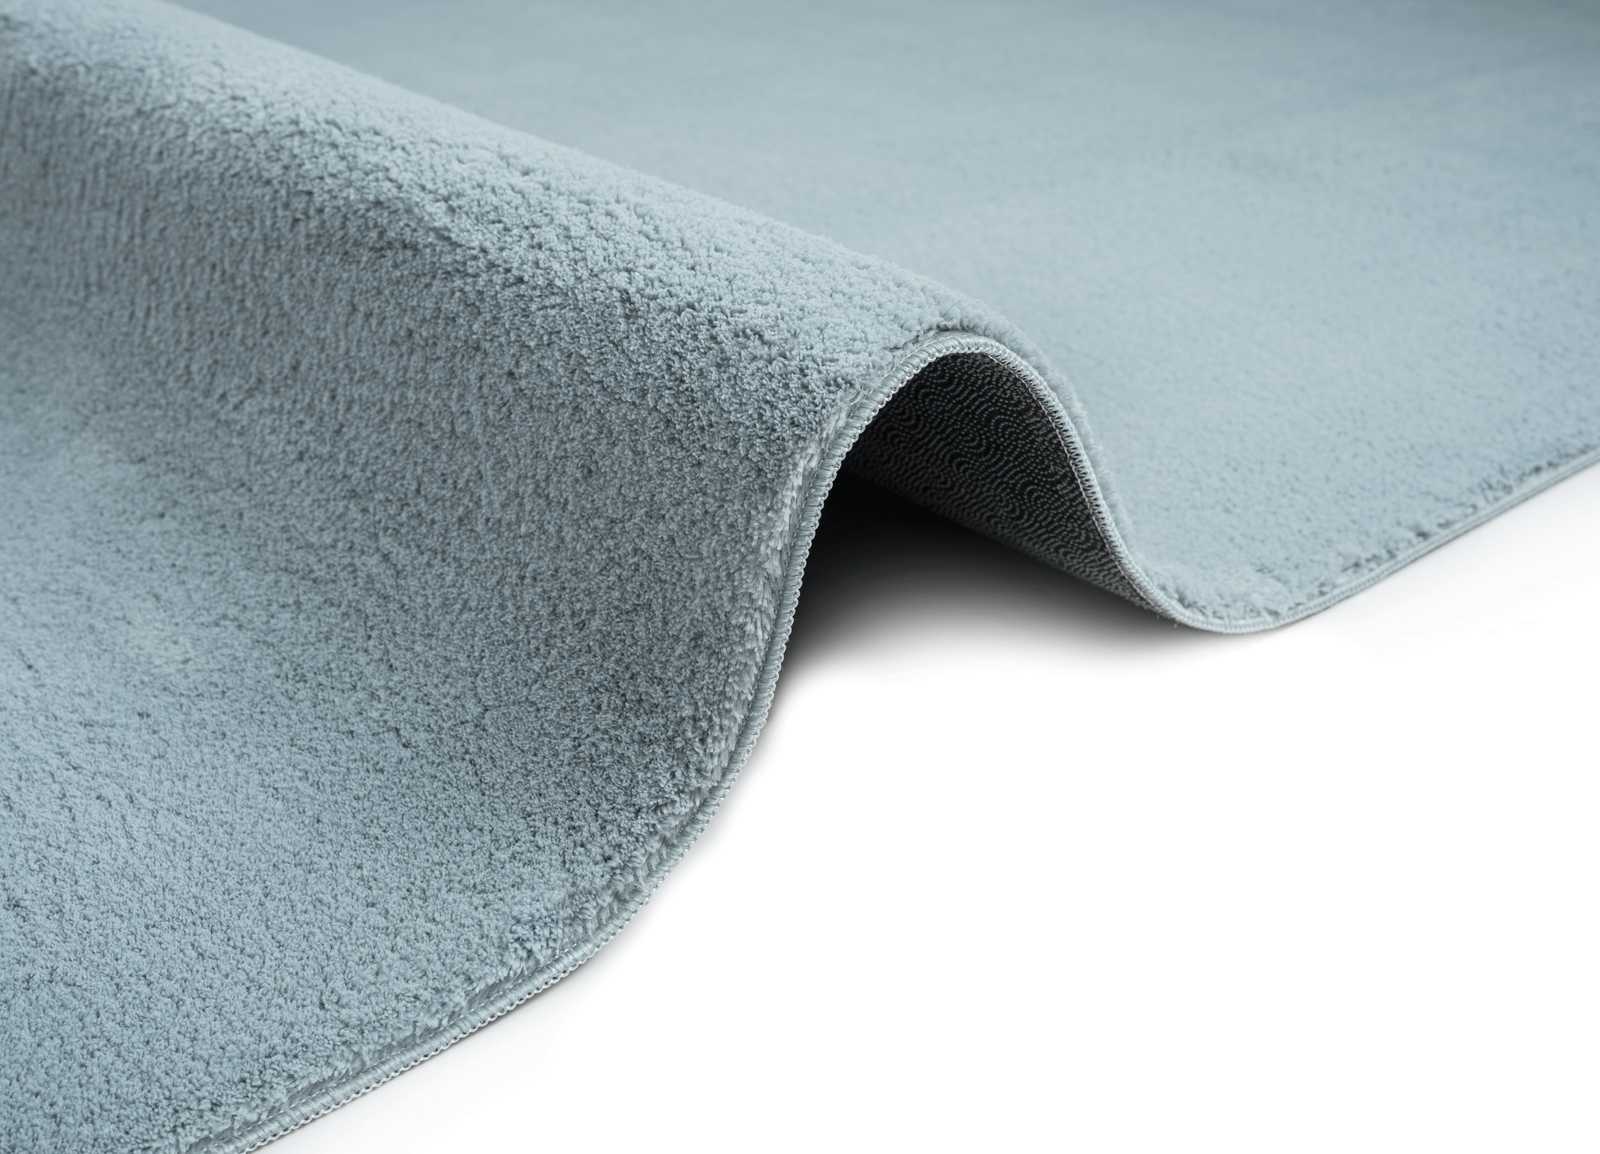             Fluffy high pile carpet in blue - 200 x 140 cm
        